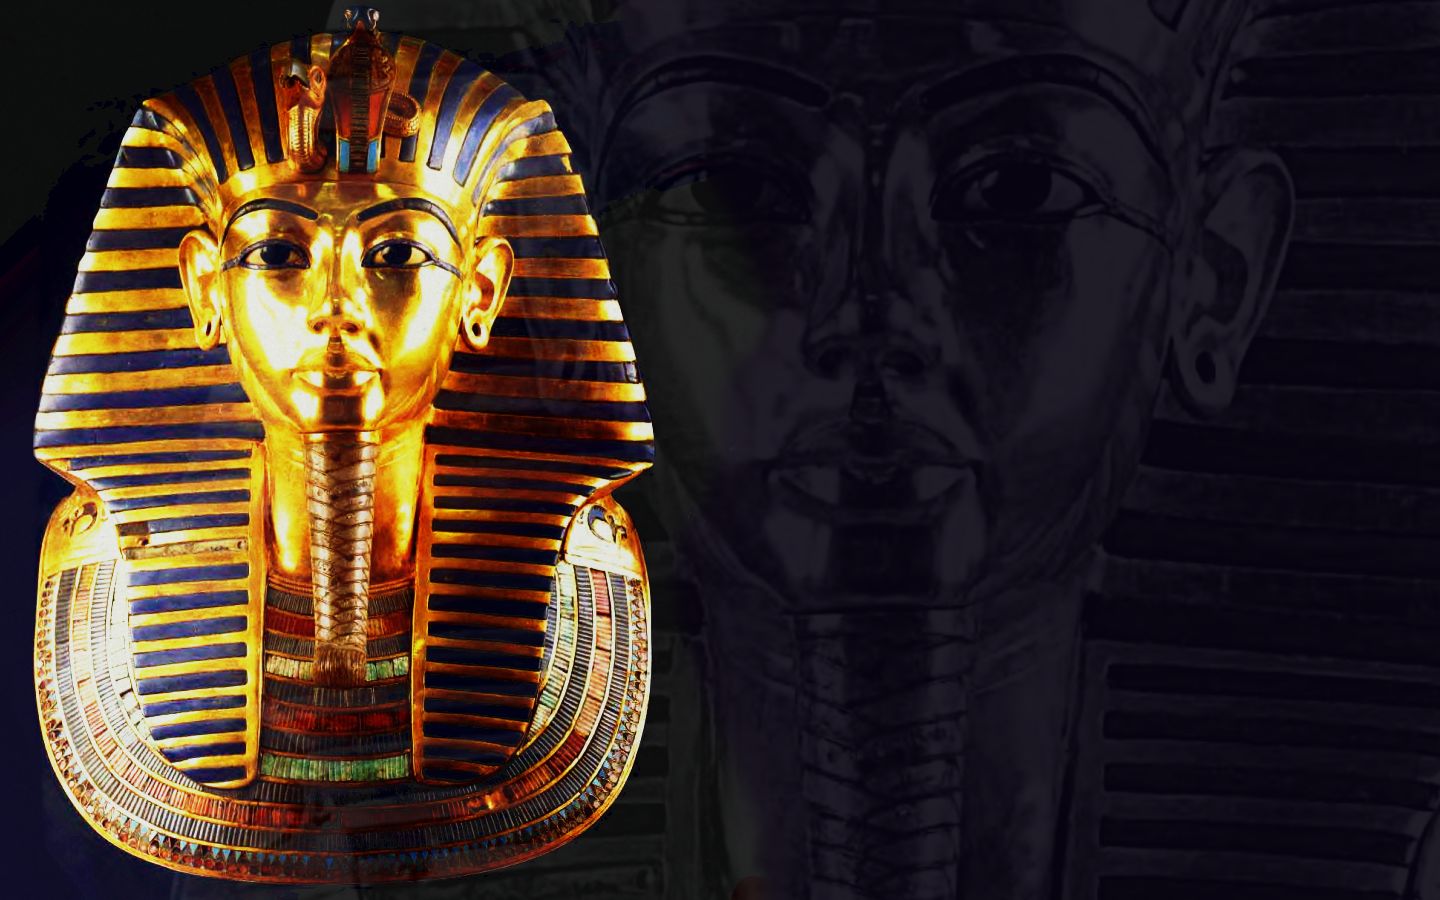 Фараон Тутанхамон арт